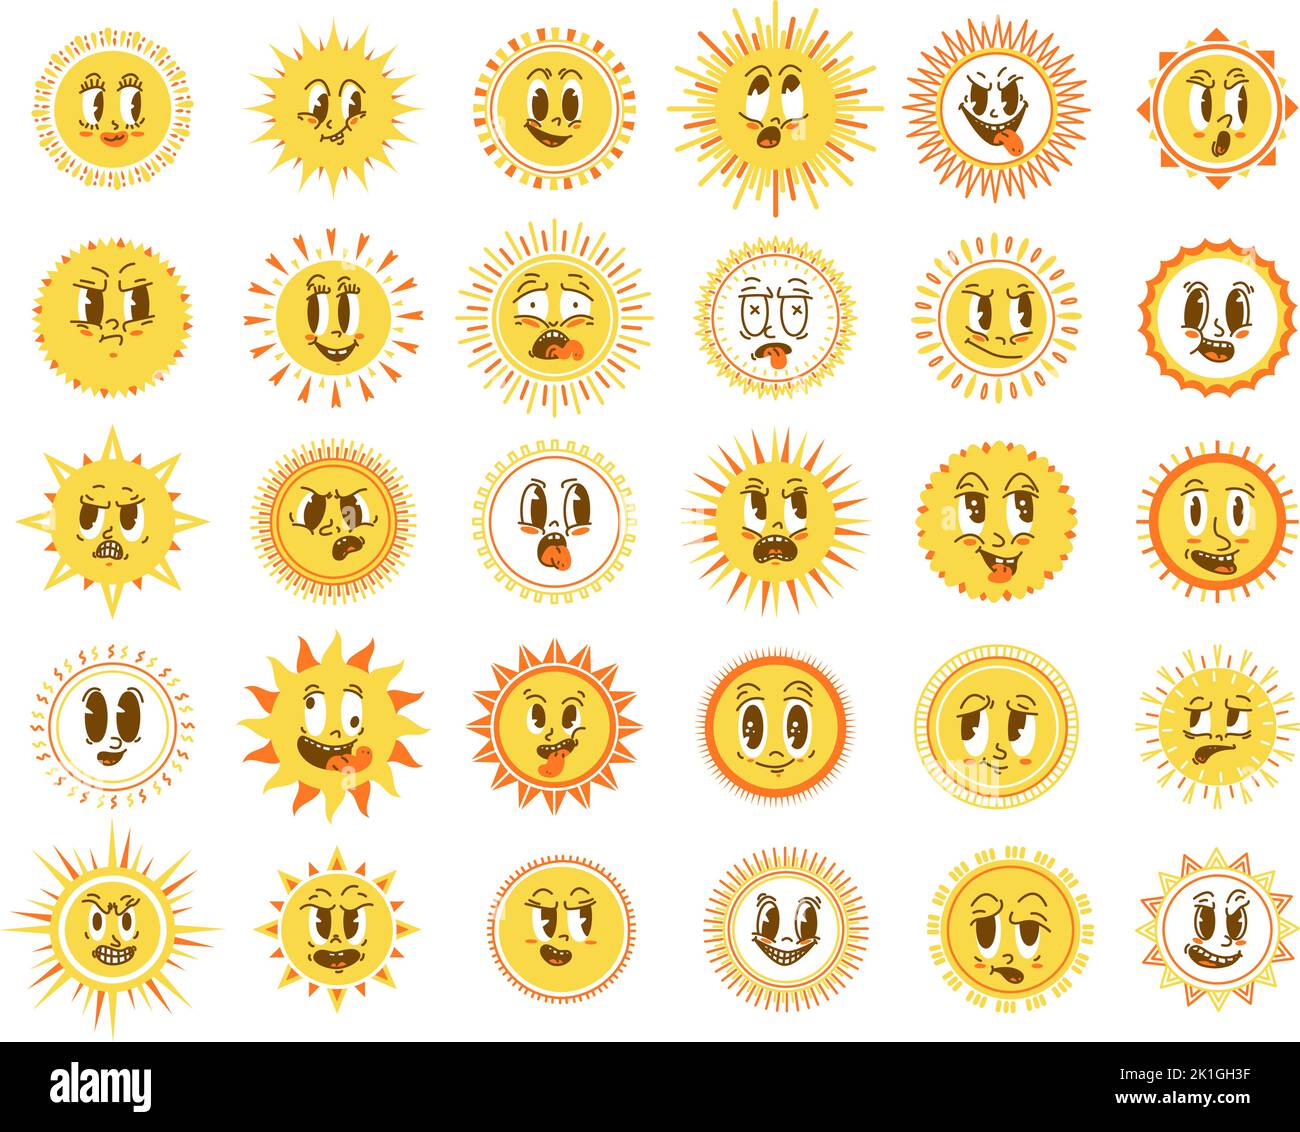 Sonne steht den Elementen gegenüber. Morgensonne, fröhliche niedliche Cartoon-Sonnen. Isolierte emotionale Frühling Sommer Zeichen, gelb lustig shässlich Vektor Grafik-Icons Stock Vektor